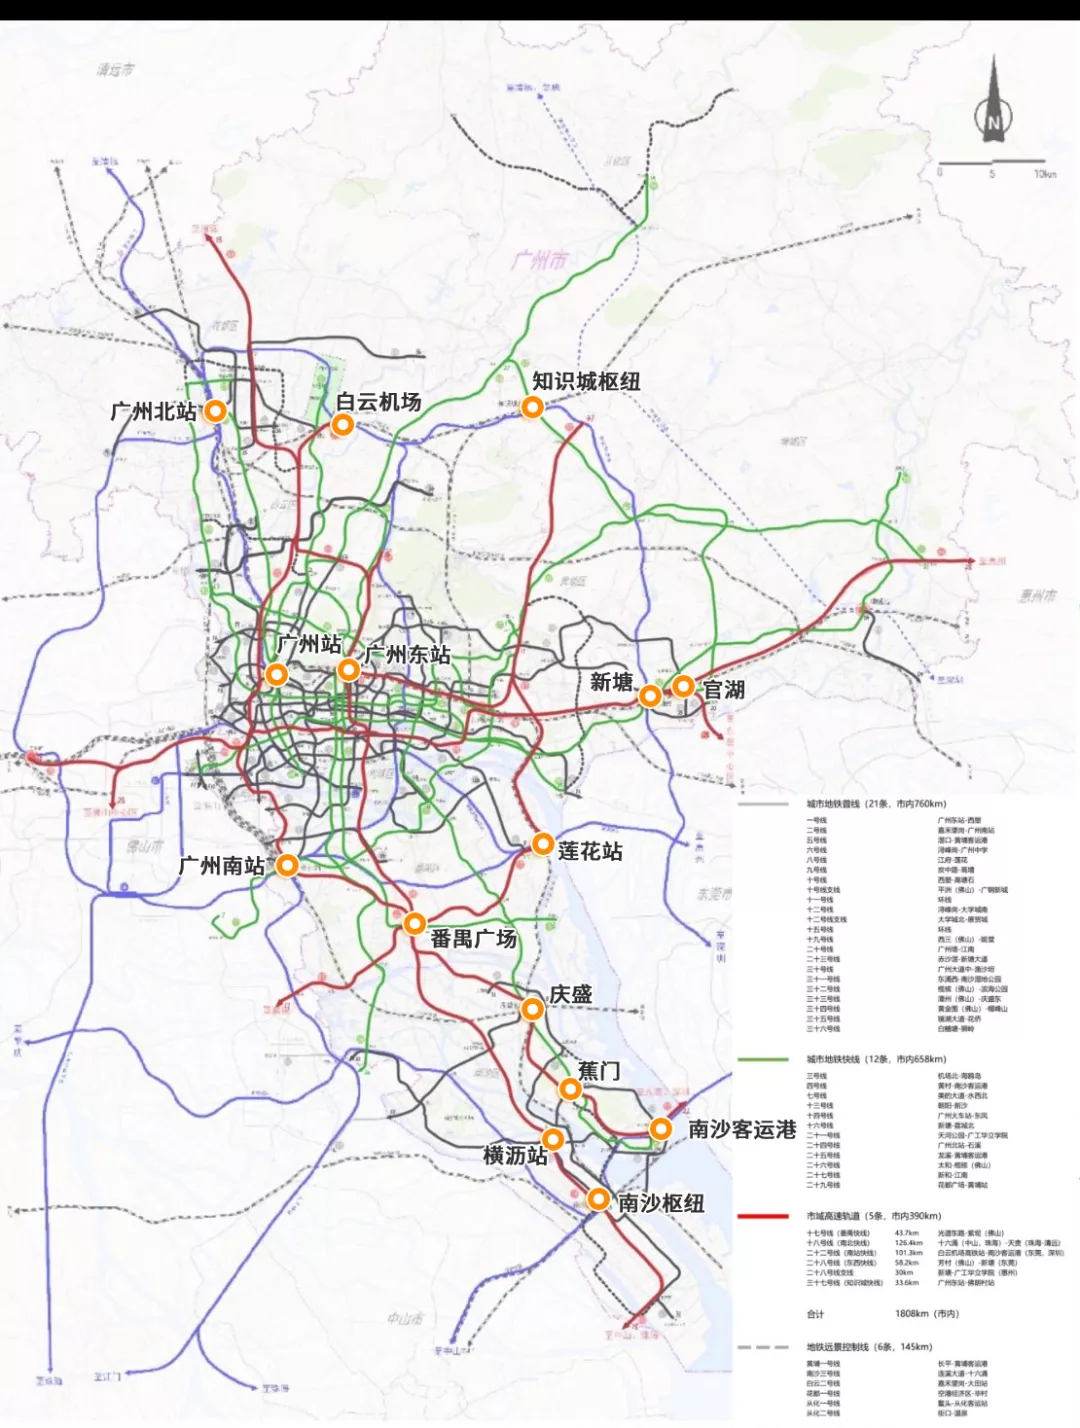 guangzhou port map